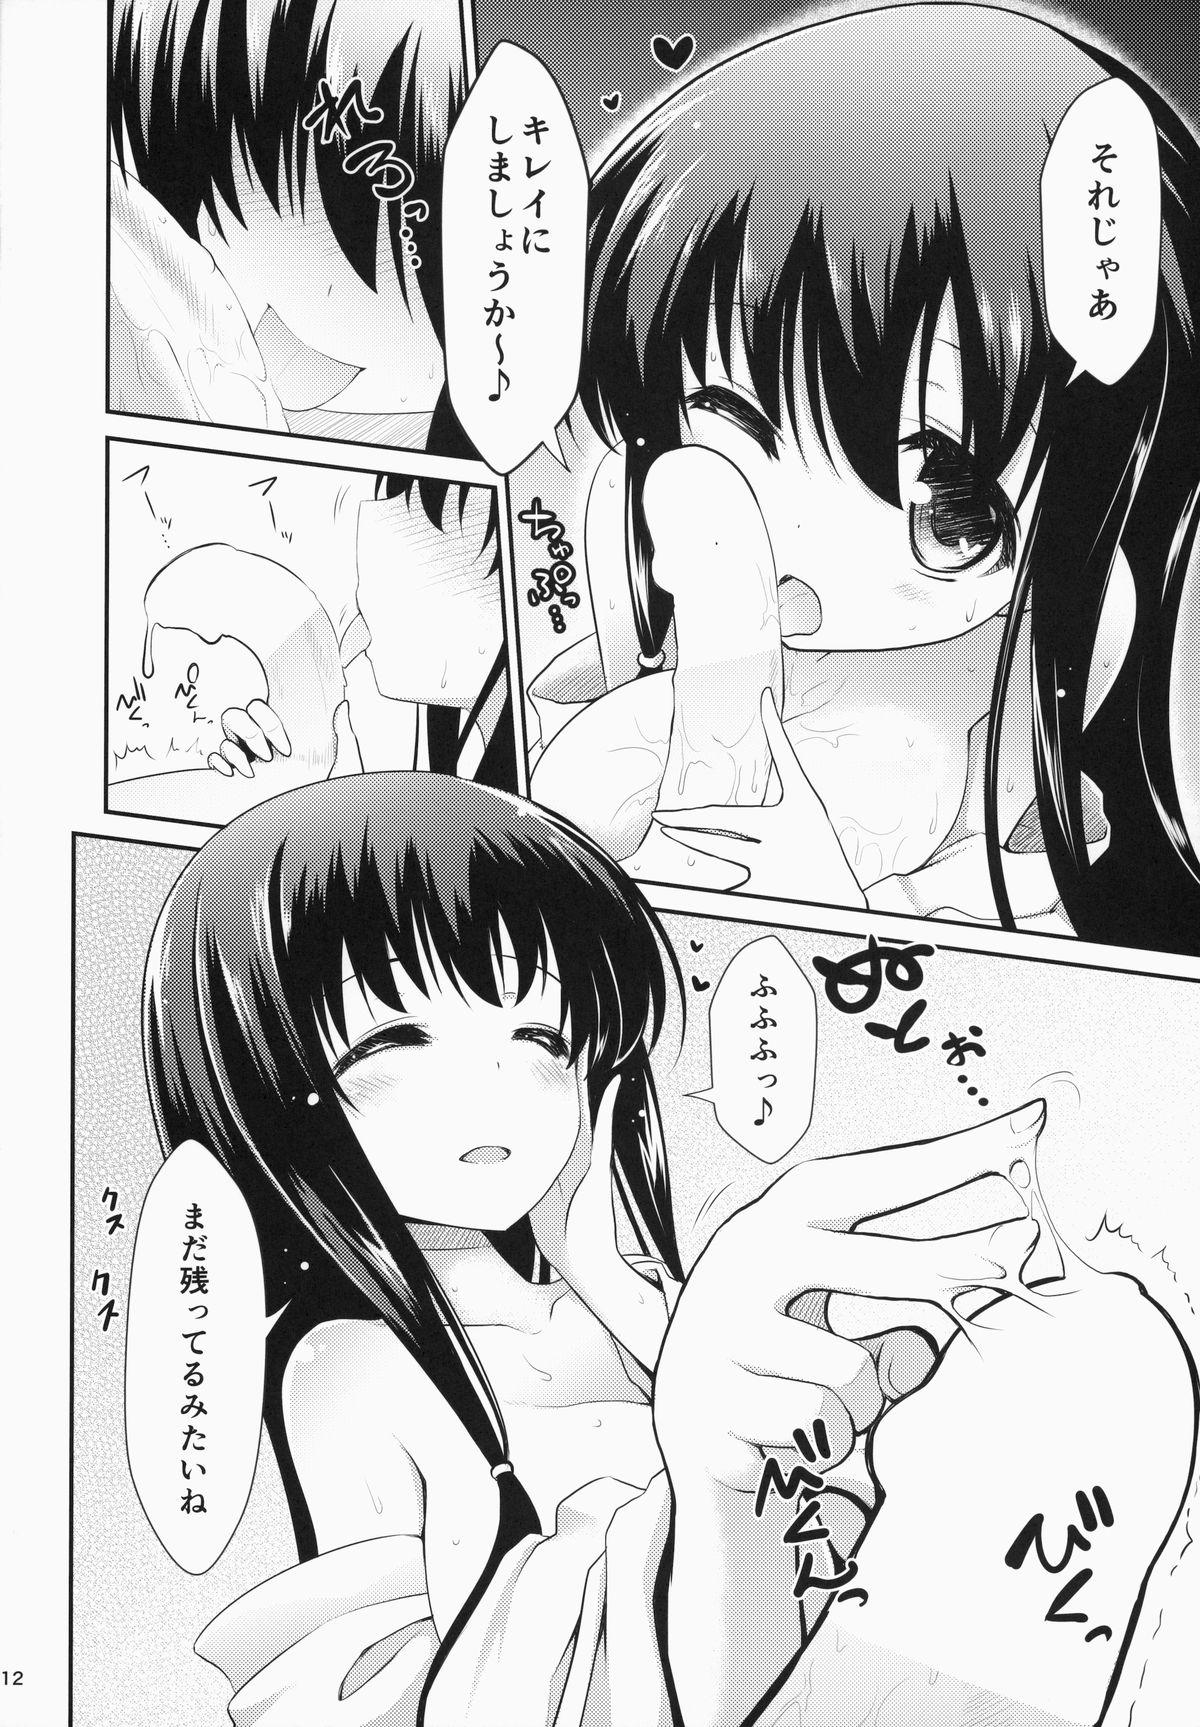 Super Hot Porn Eisui no Mori no Mankai no Shita - Saki Webcamchat - Page 12